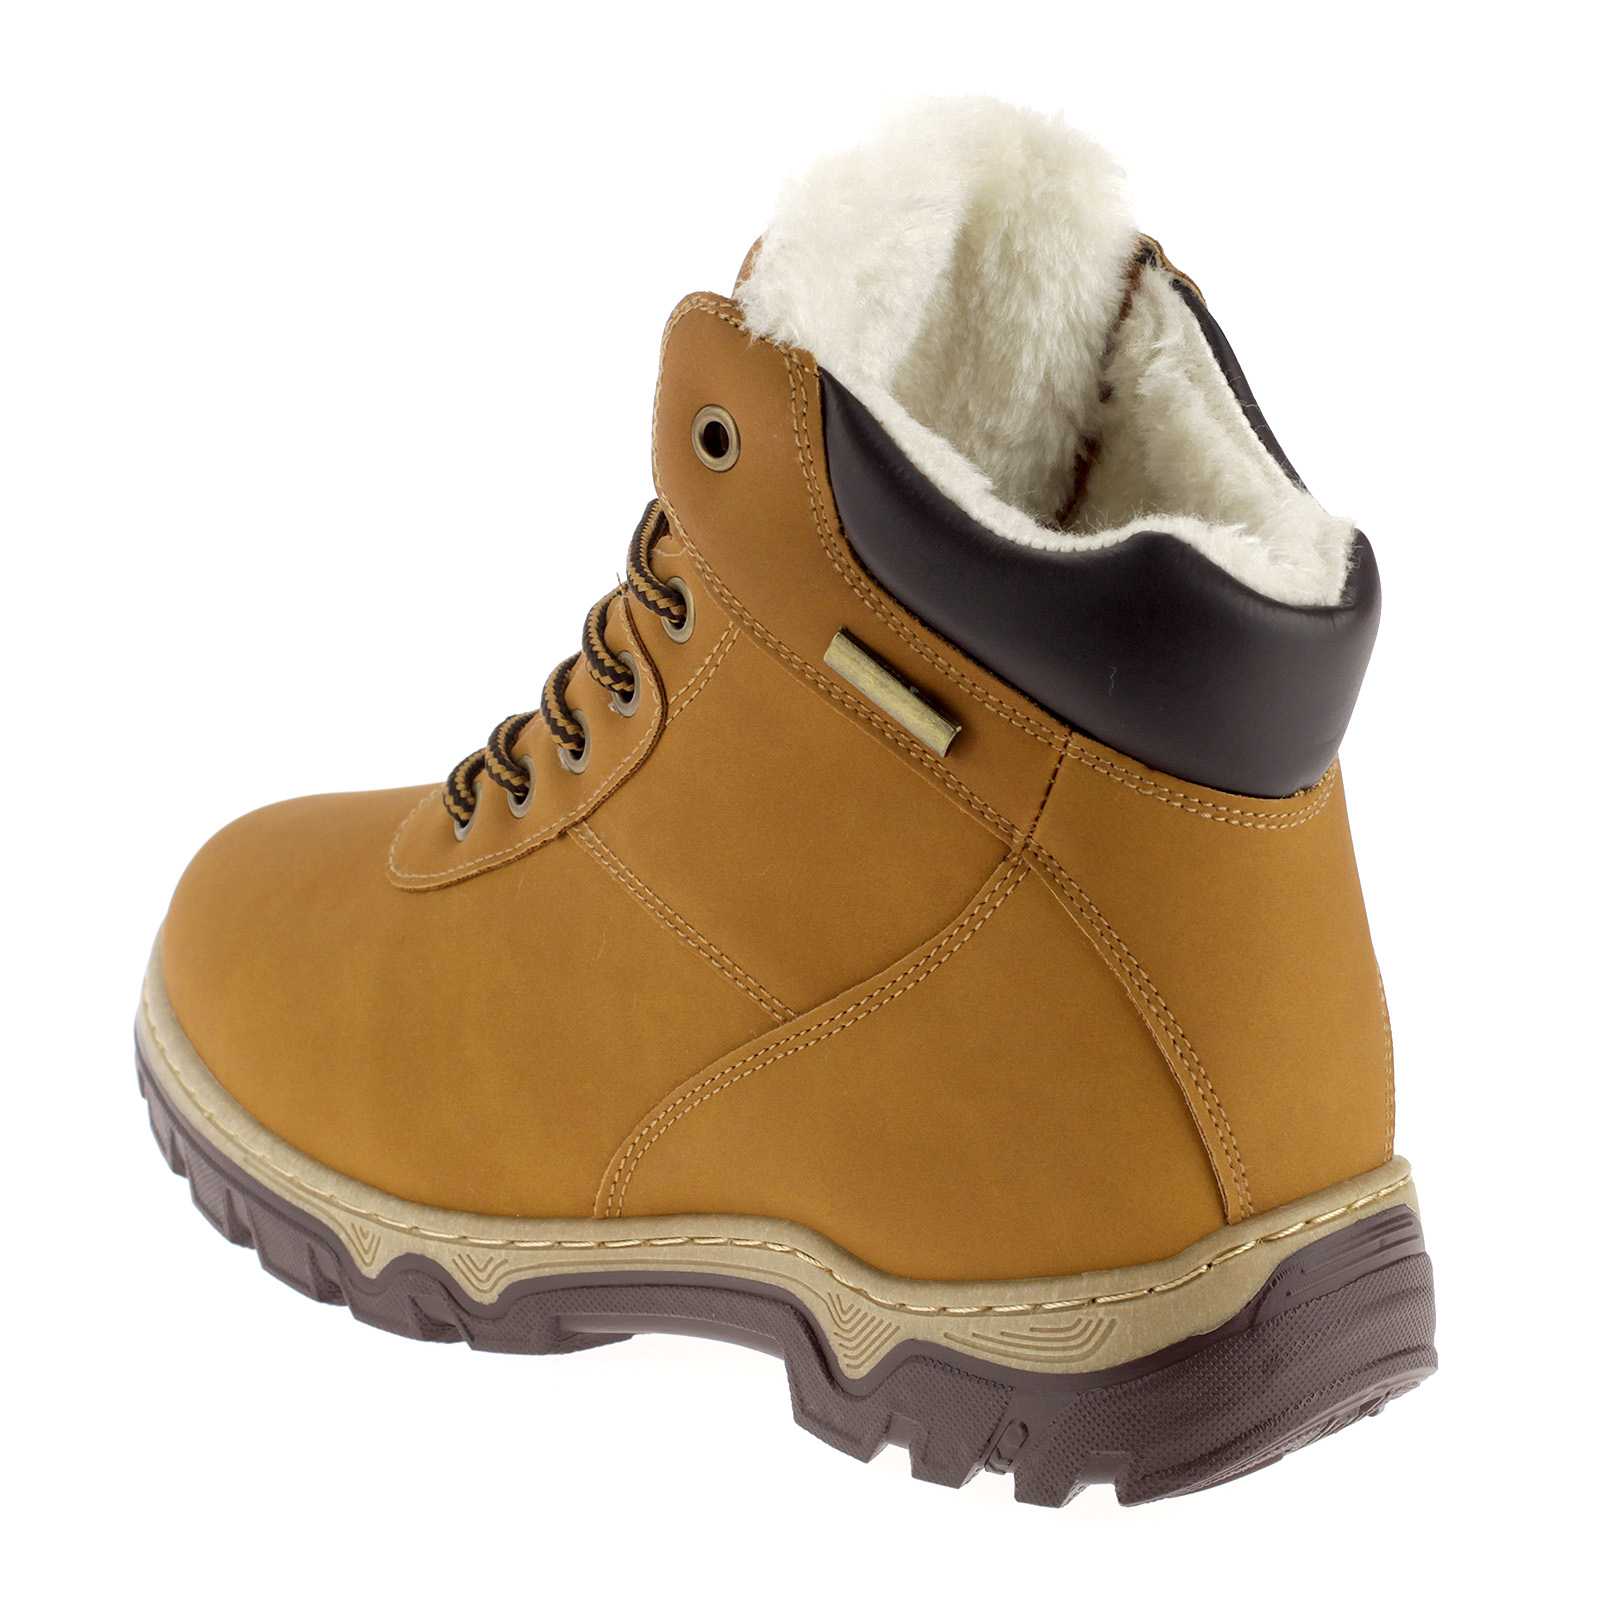 Damen Stiefel Winterschuhe Outdoor Boots Warmfutter Gefütterte Schuhe 3430